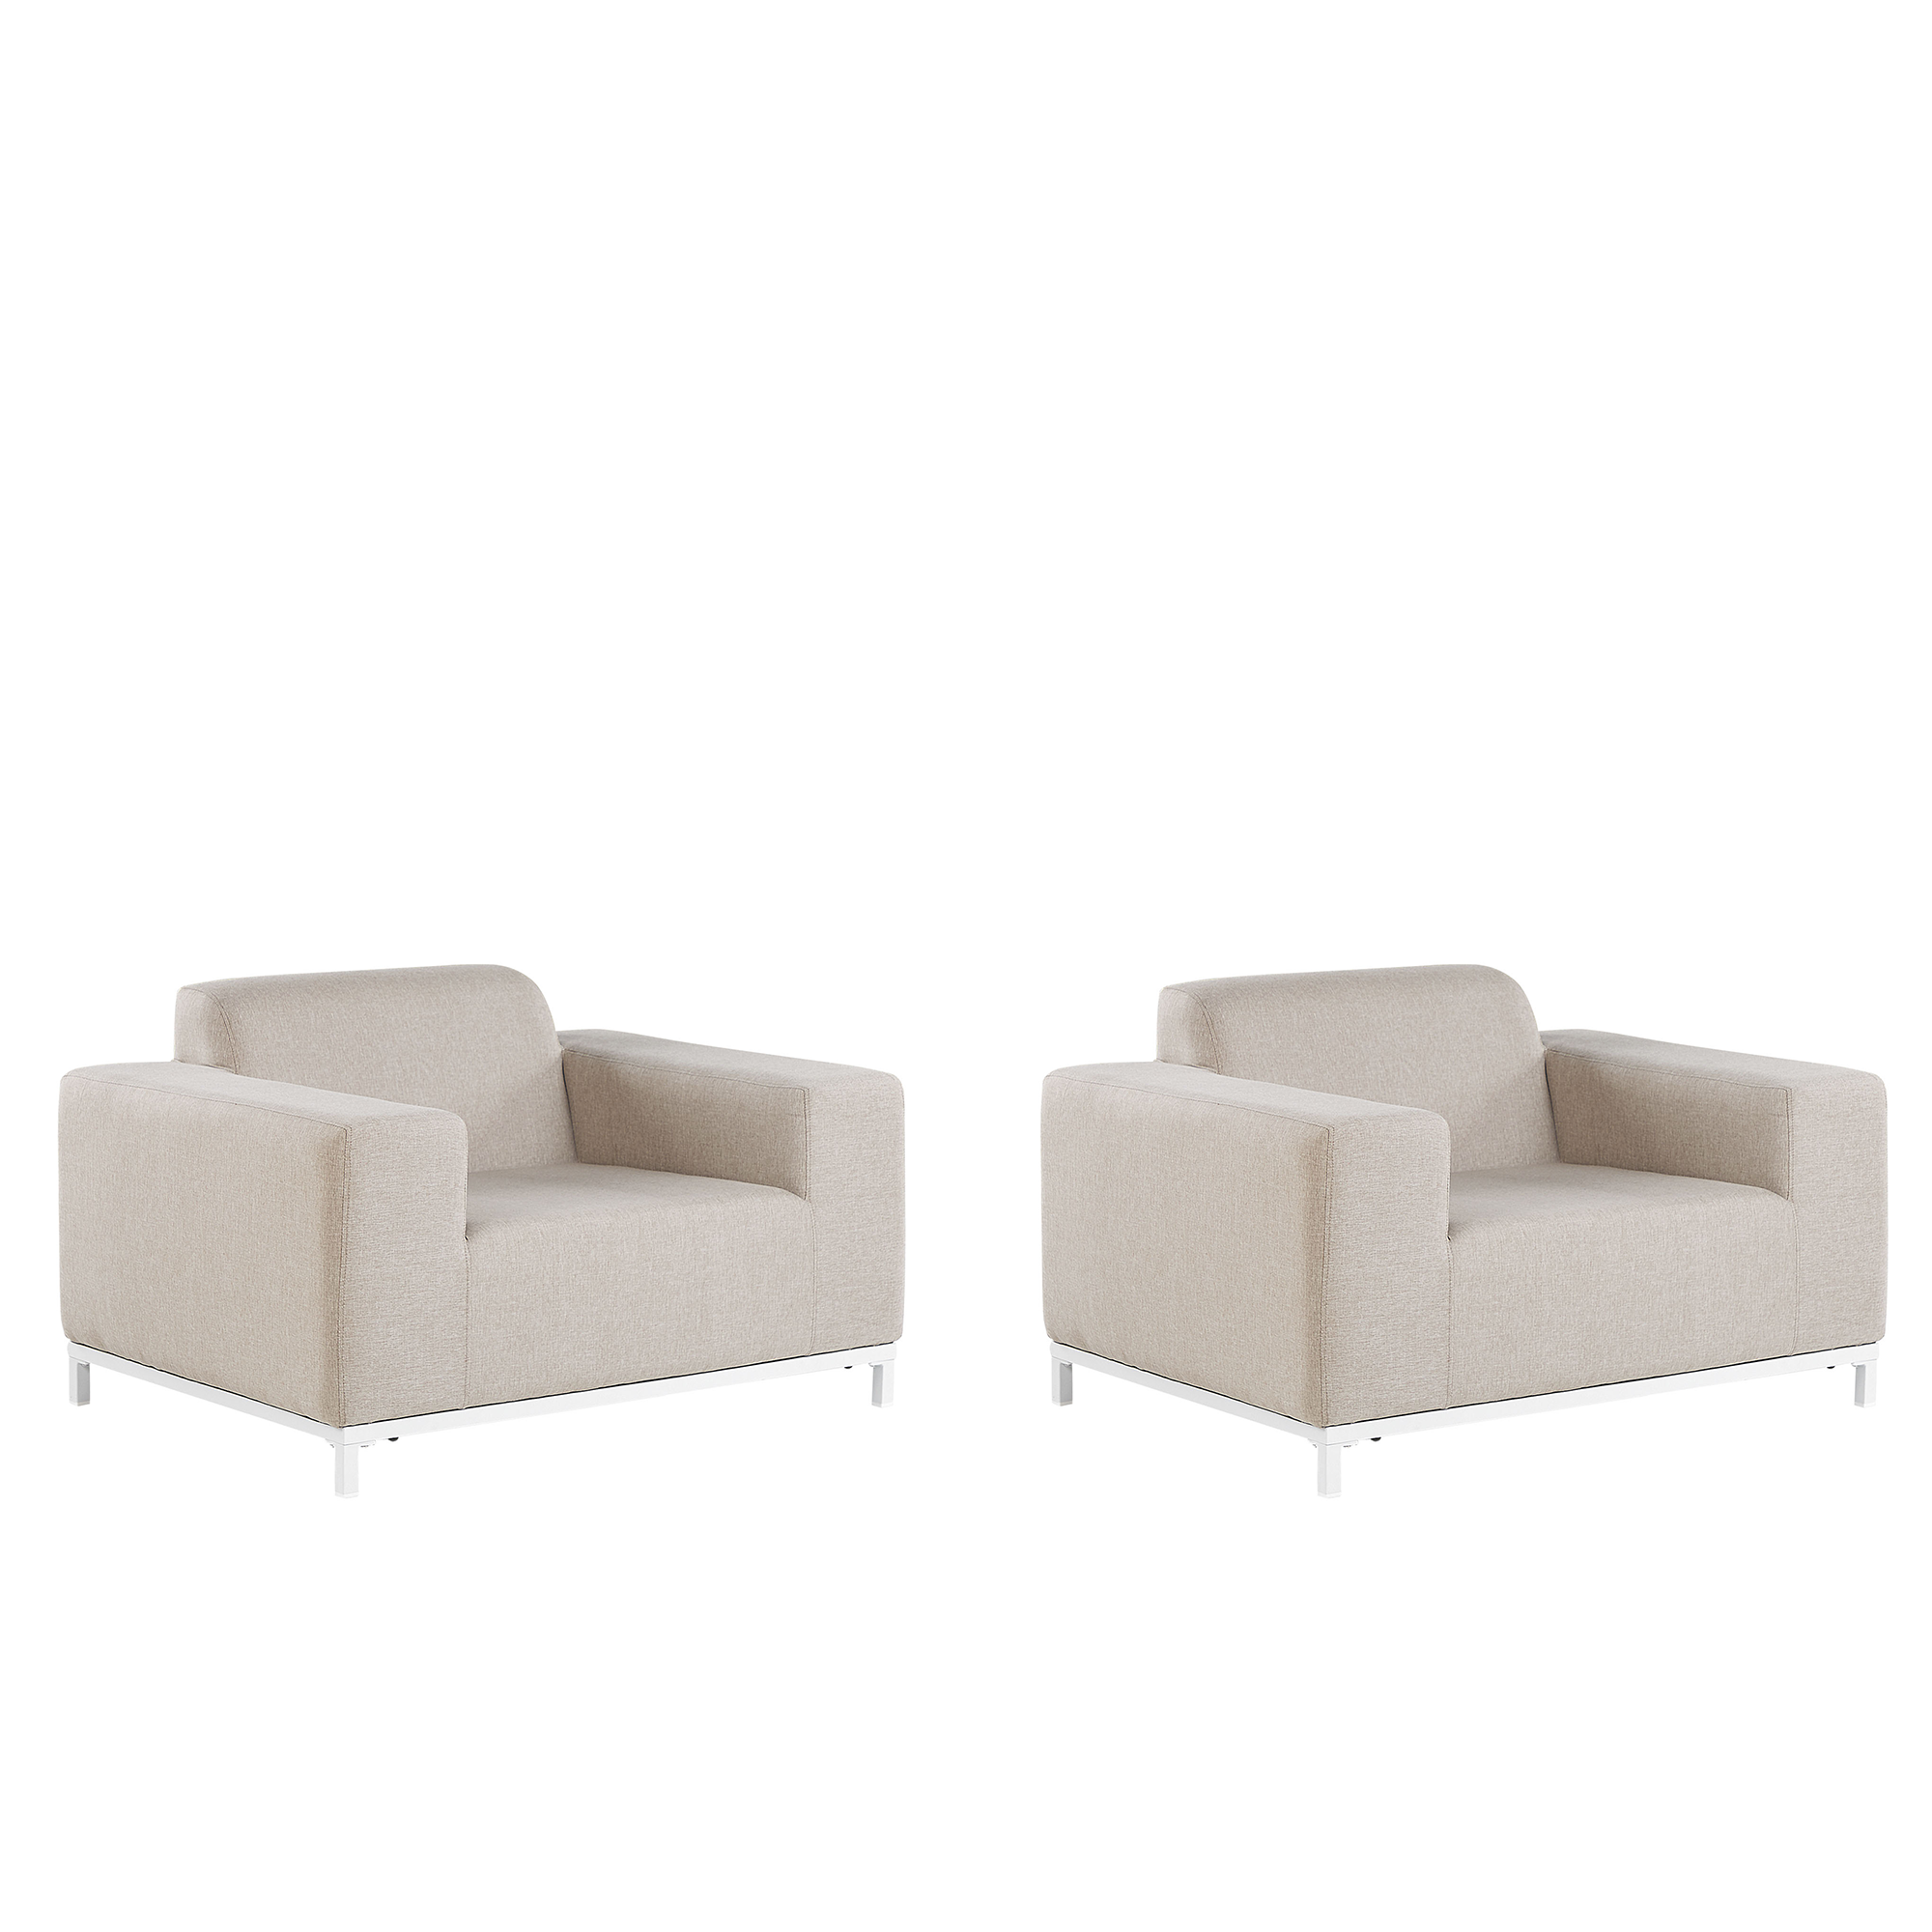 Beliani Set of 2 Garden Armchairs Beige Fabric White Aluminium Legs Upholstery Indoor Outdoor Furniture Weather Resistant Outdoor